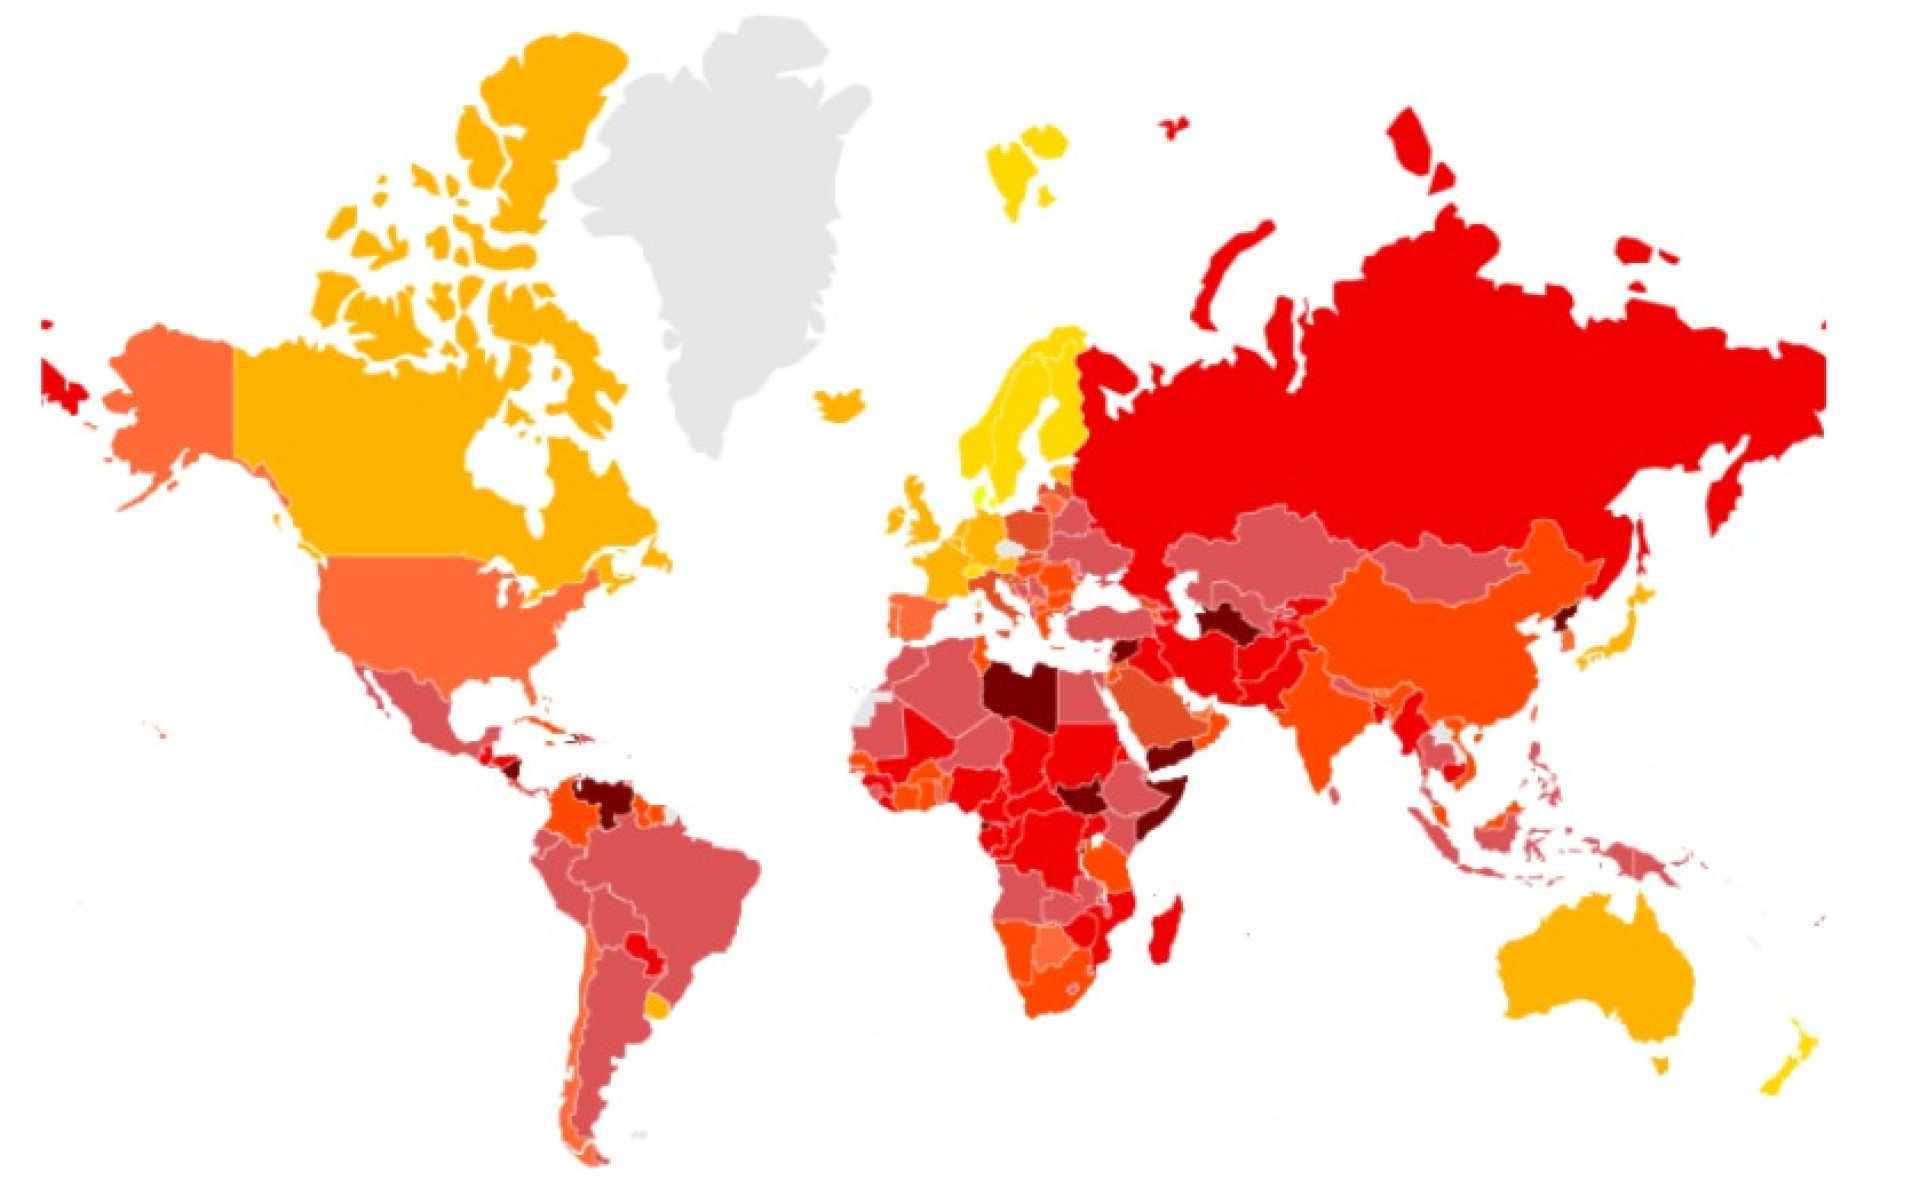 Quanto melhor a posição no ranking, menos o país é considerado corrupto e aparecem em tons mais claros no mapa 